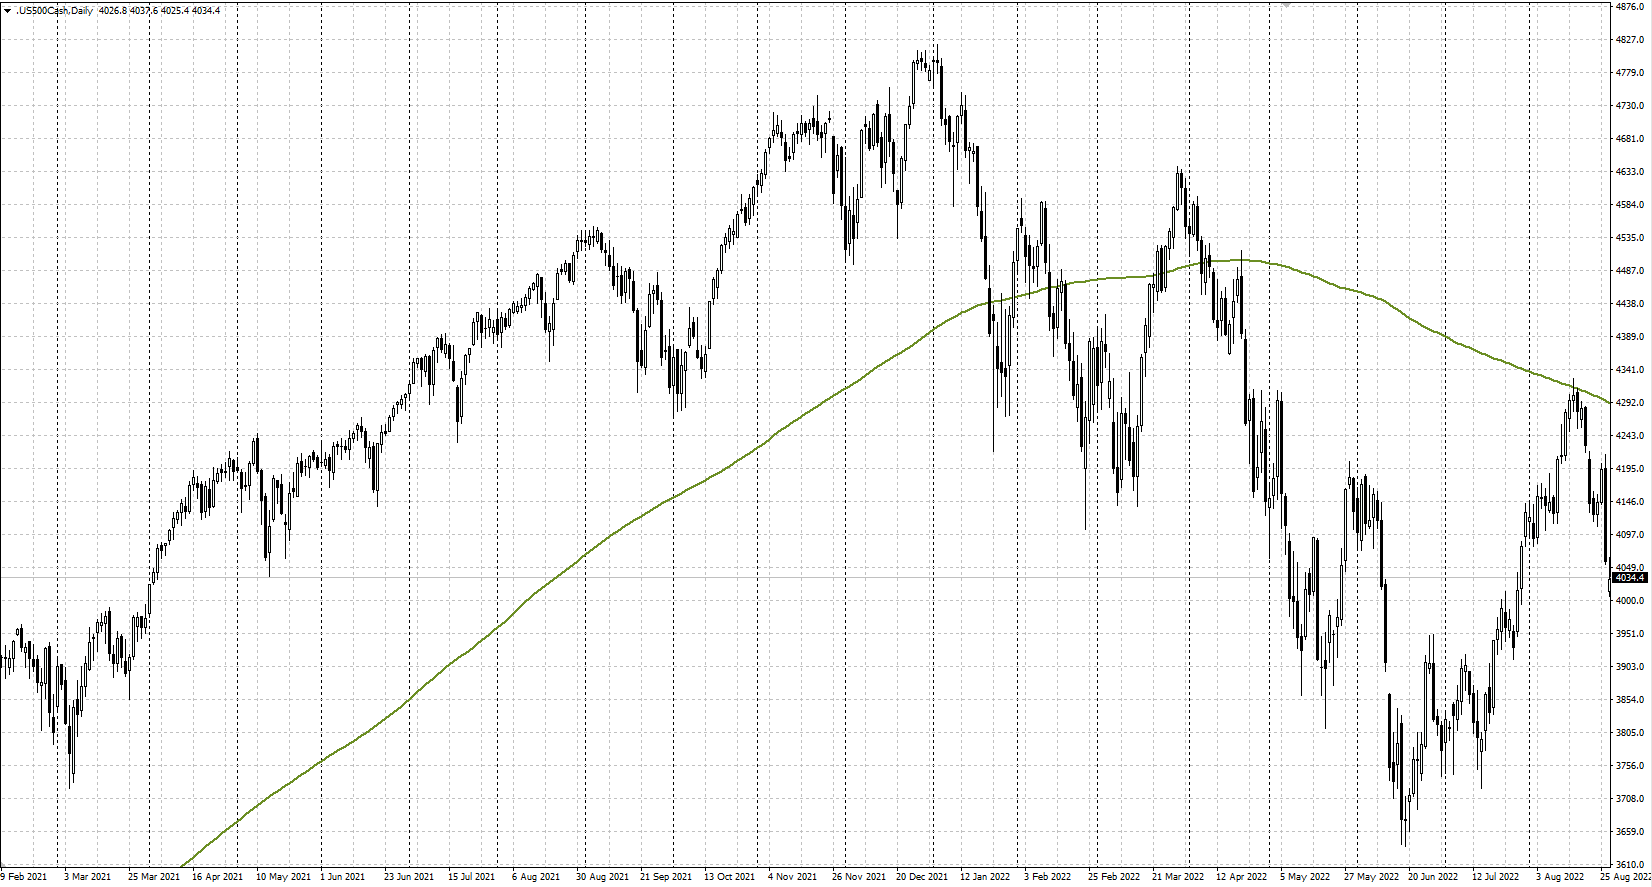 ค่าเฉลี่ยเคลื่อนที่ 200 วันบนกราฟราคาดัชนี S&P 500